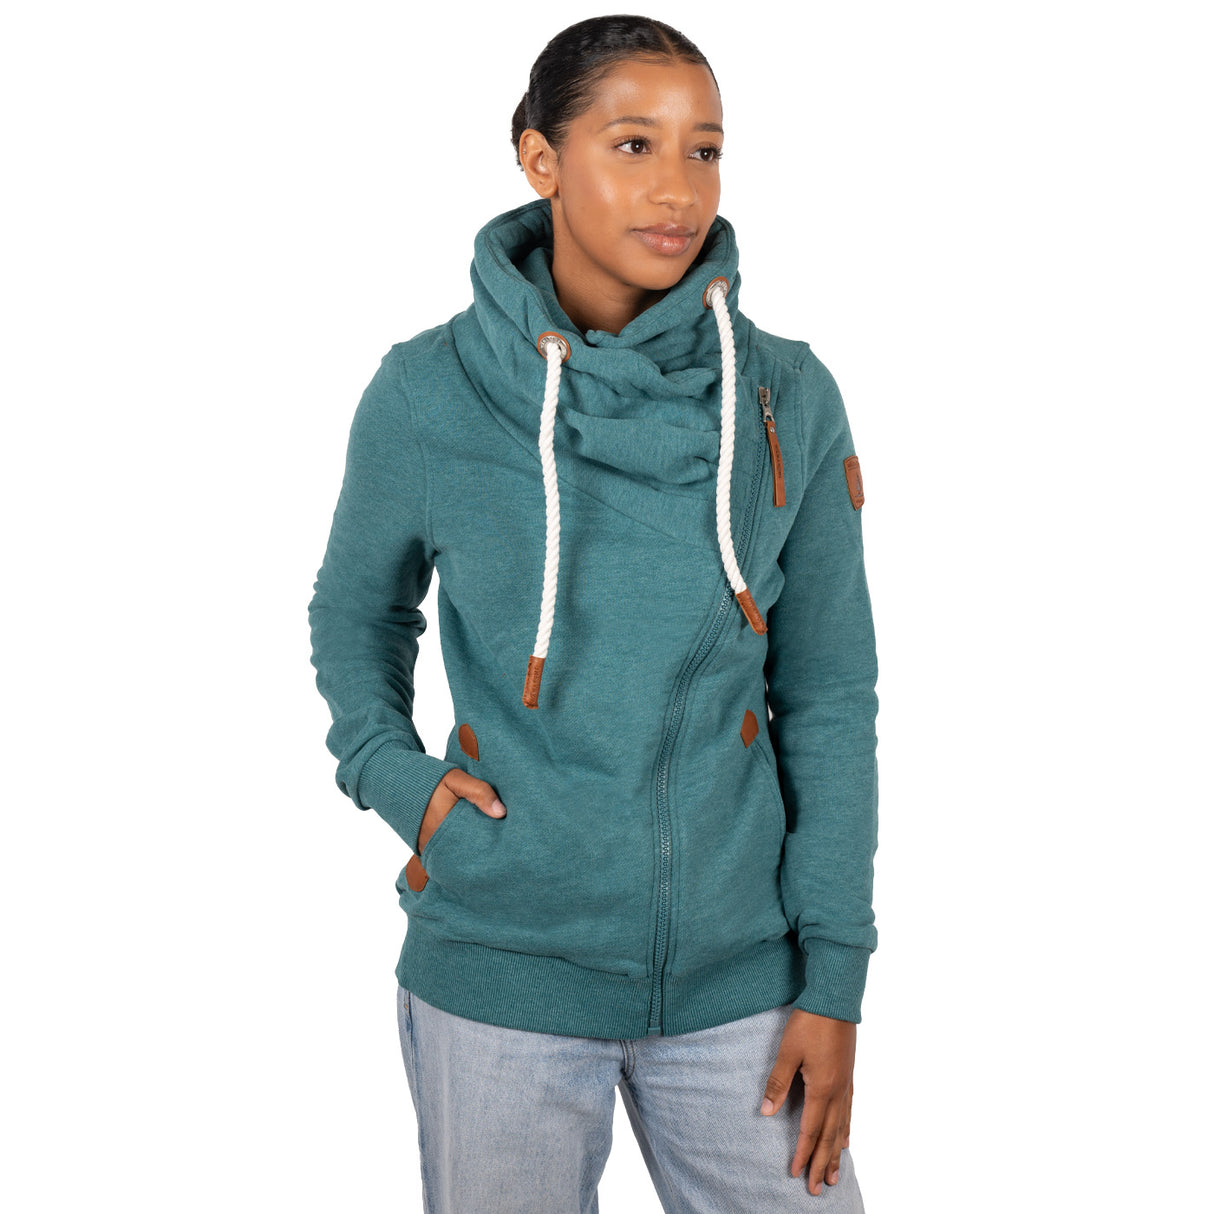 Superdry Superdry Sport Mesh Zip Hoodie - Women's Womens  Hoodies-and-sweatshirts